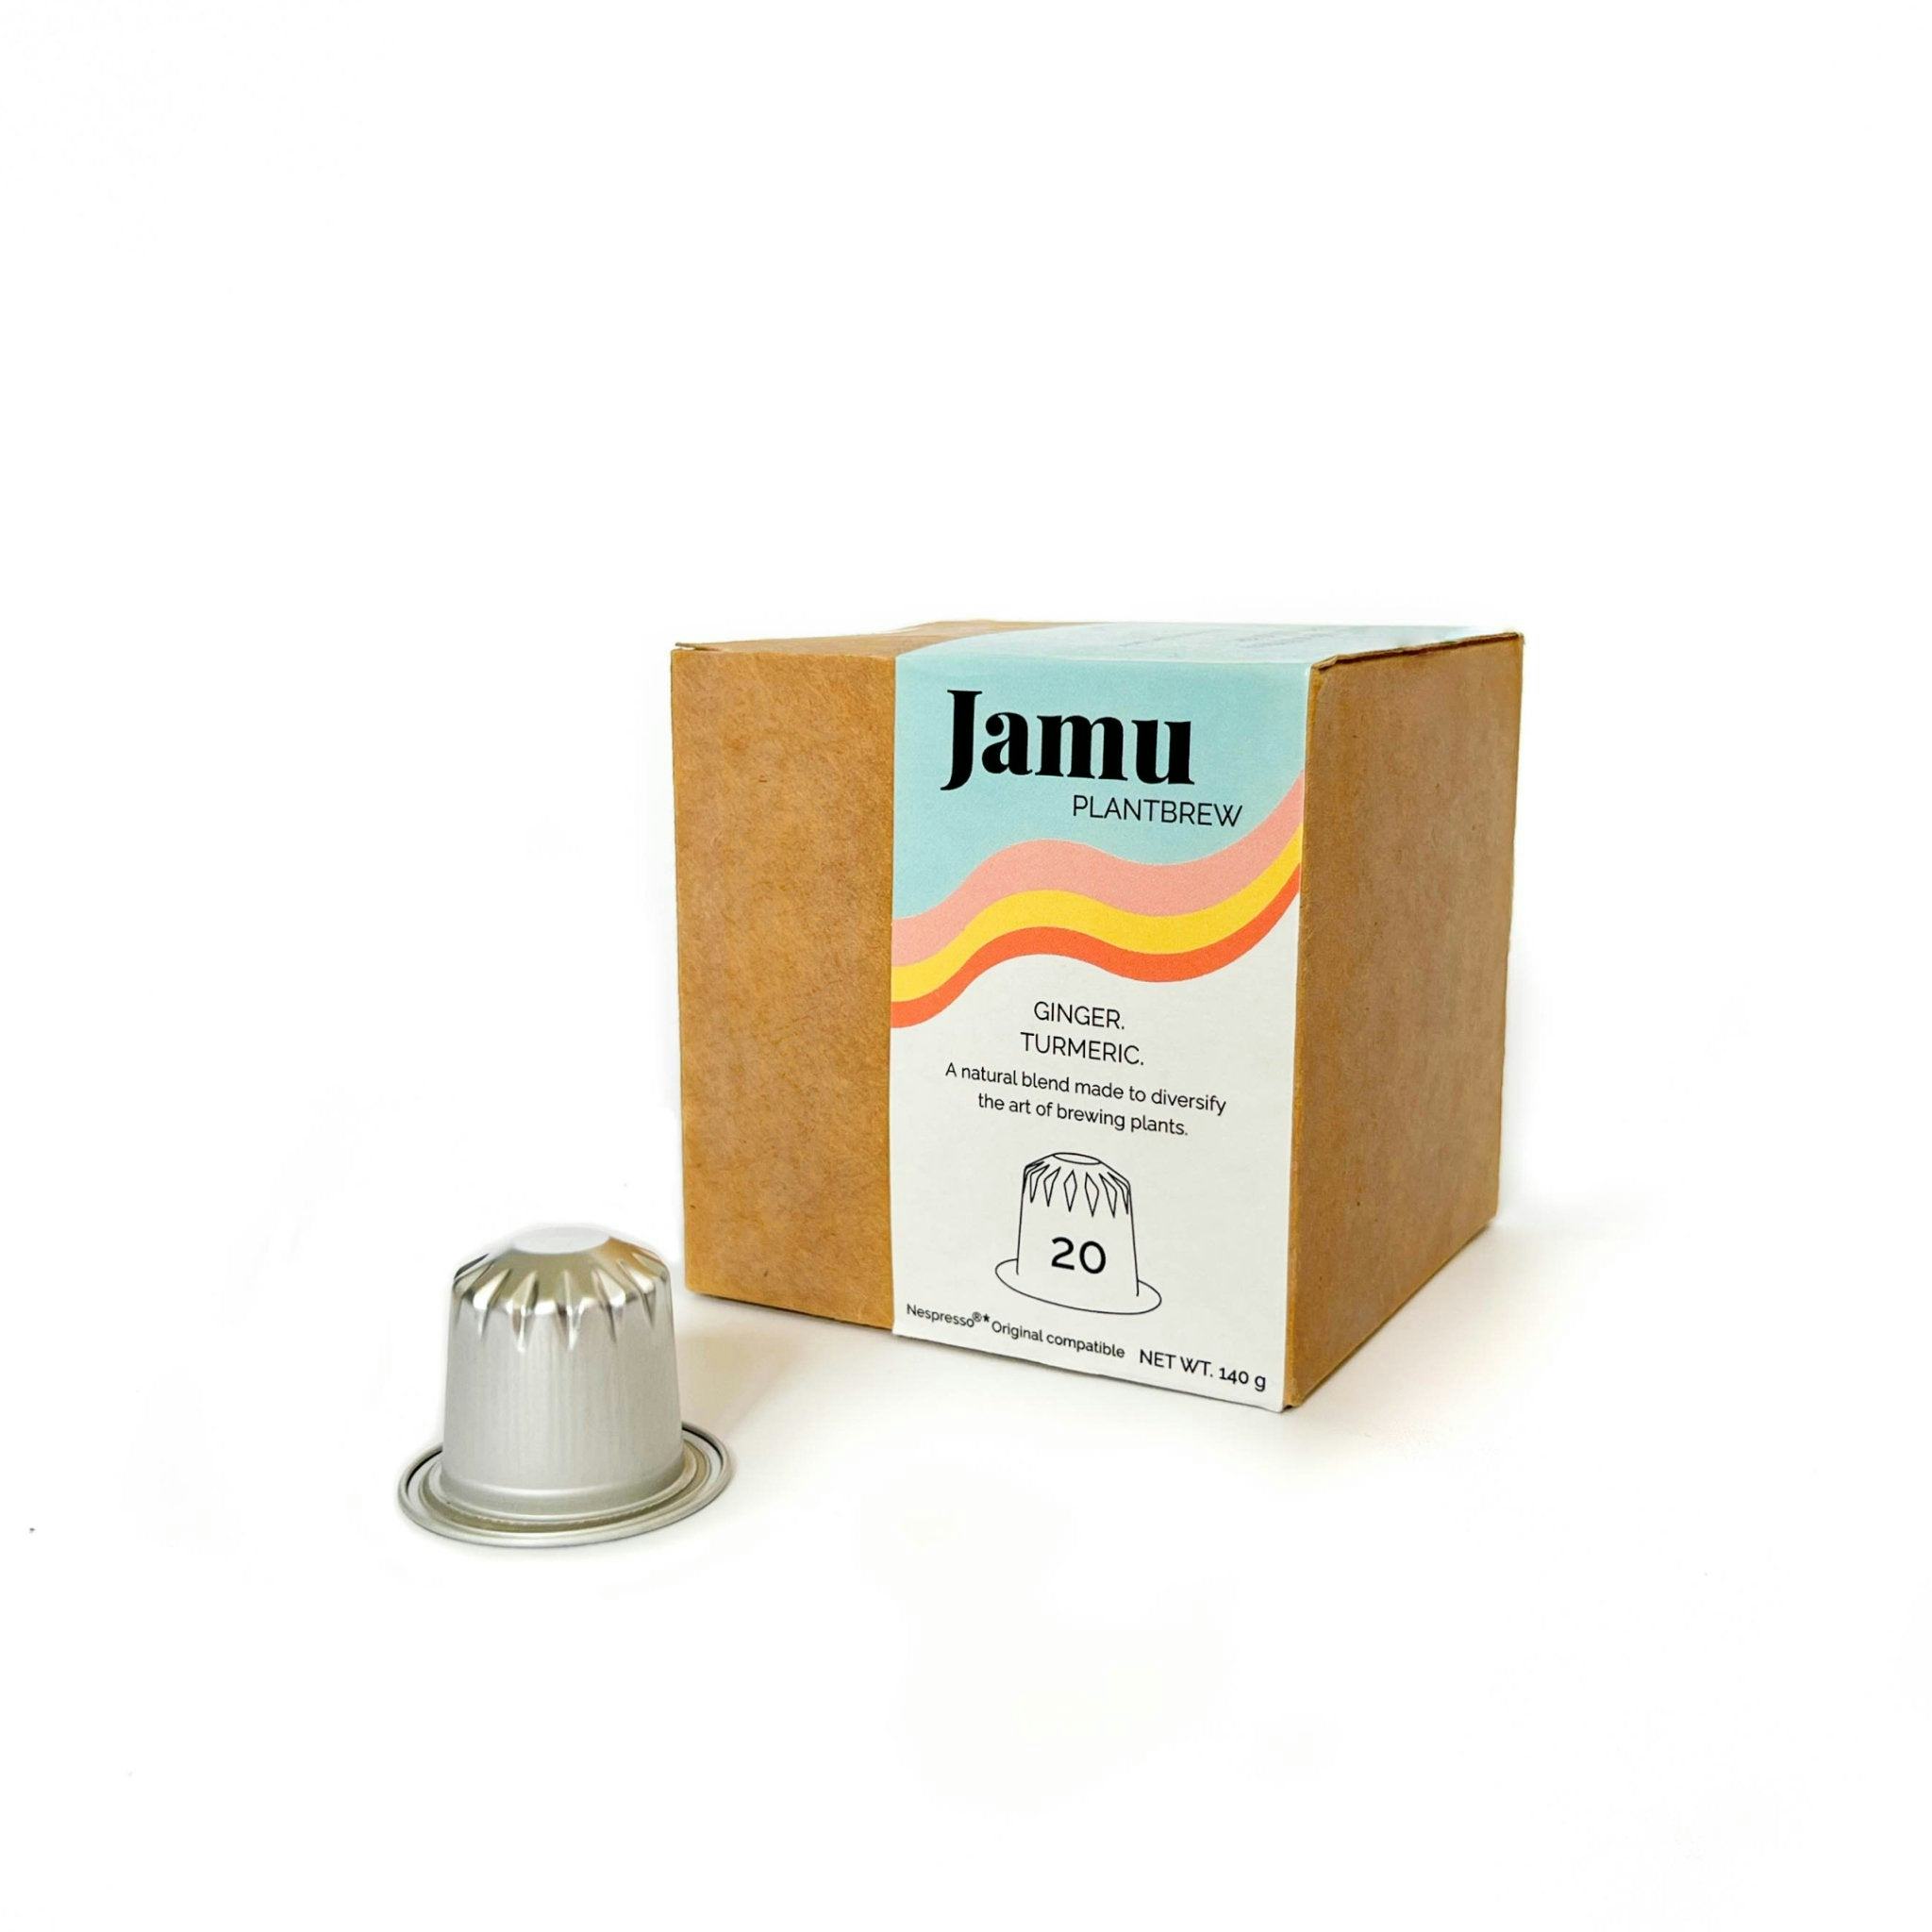 Jamu PlantBrew, Ginger & Curcuma (20 capsules), prodotto artigianale per la vendita diretta in Svizzera